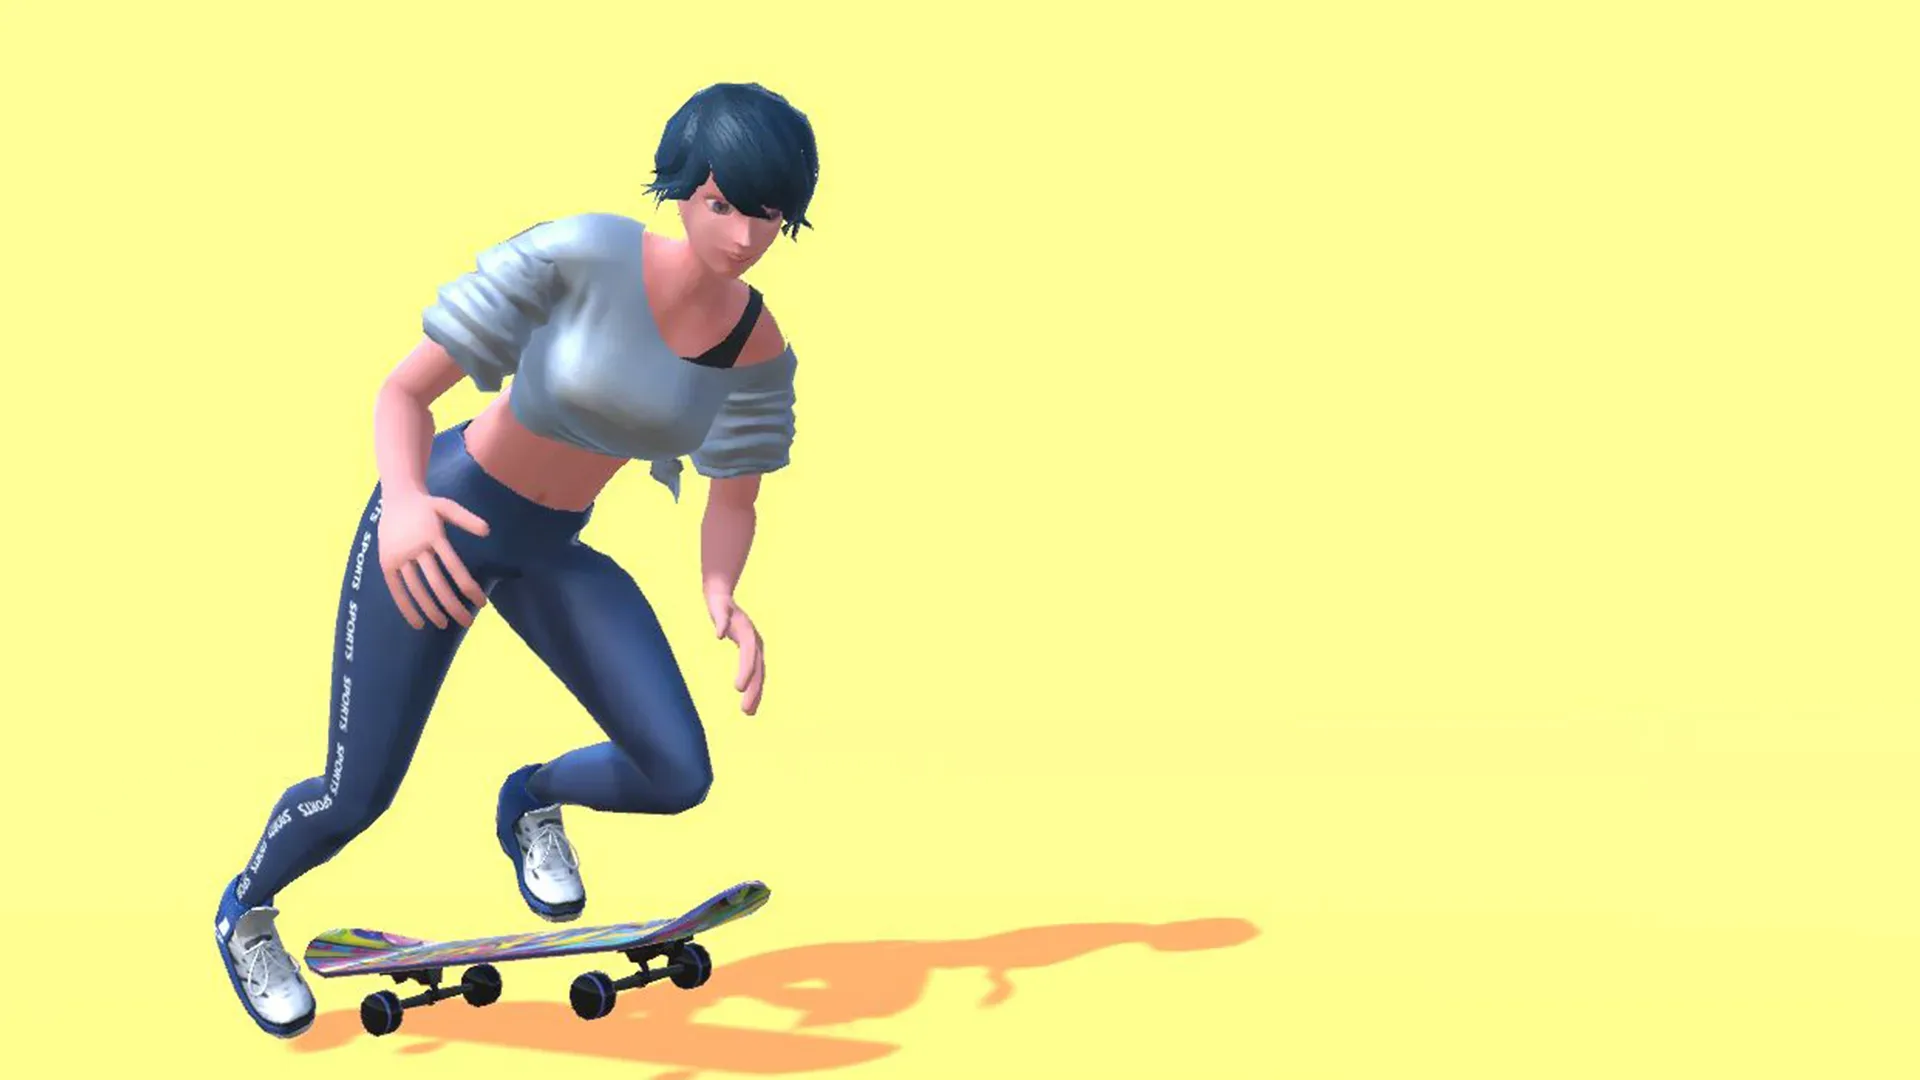 Skate Boards 1